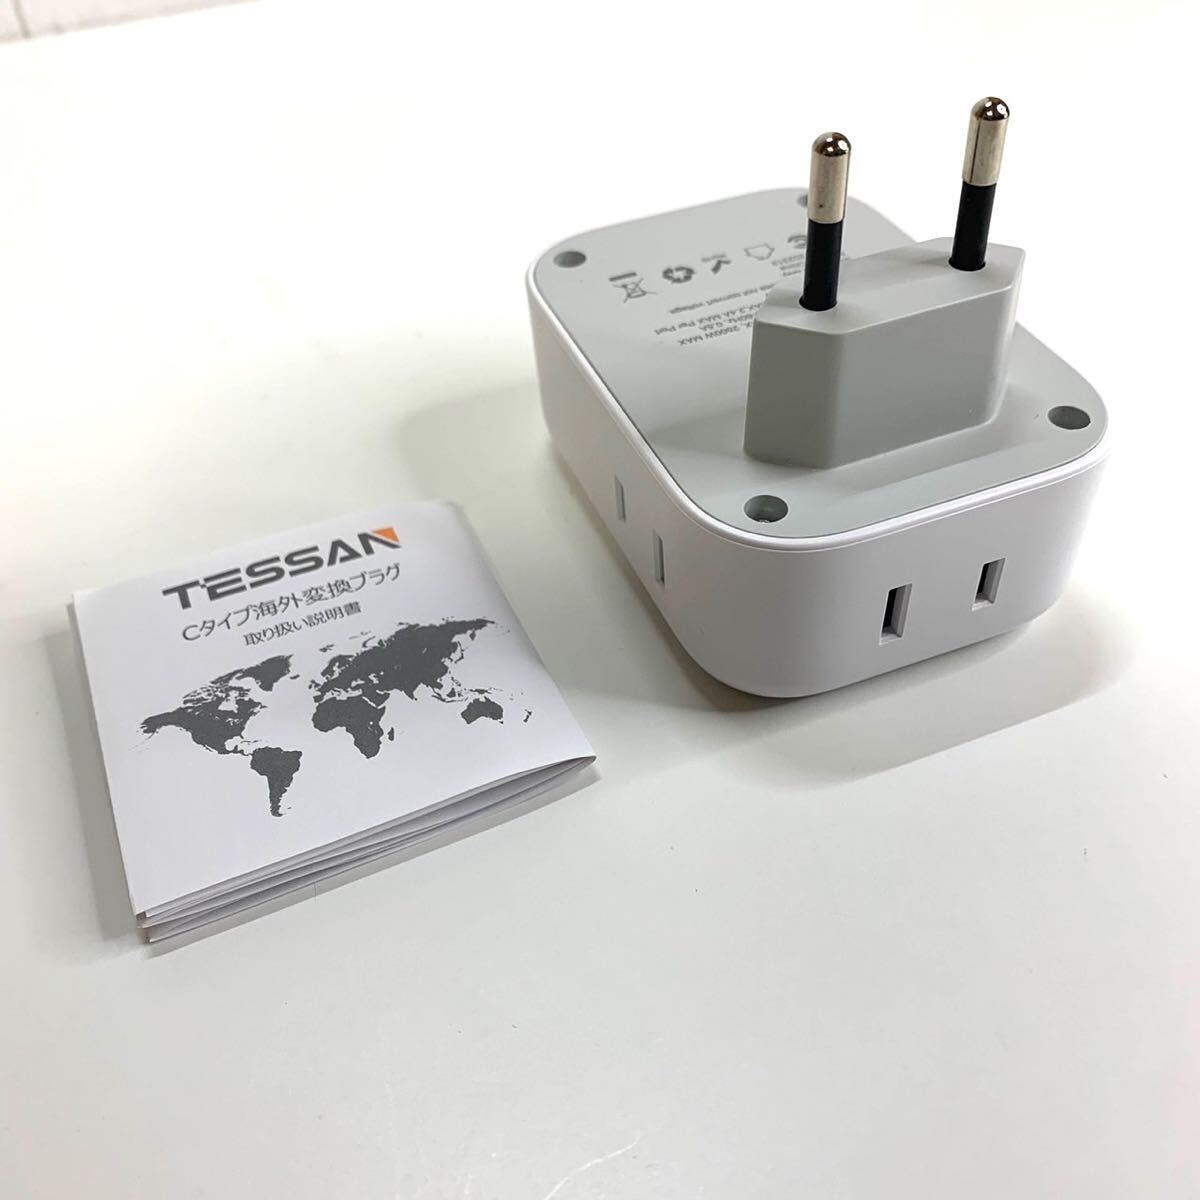 【送料無料】TESSAN 変換プラグ Cタイプ 海外旅行用 変換器 変換アダプター コンセント4個AC差込口 3USBポート付き 韓国/ヨーロッパ(A185)_画像9